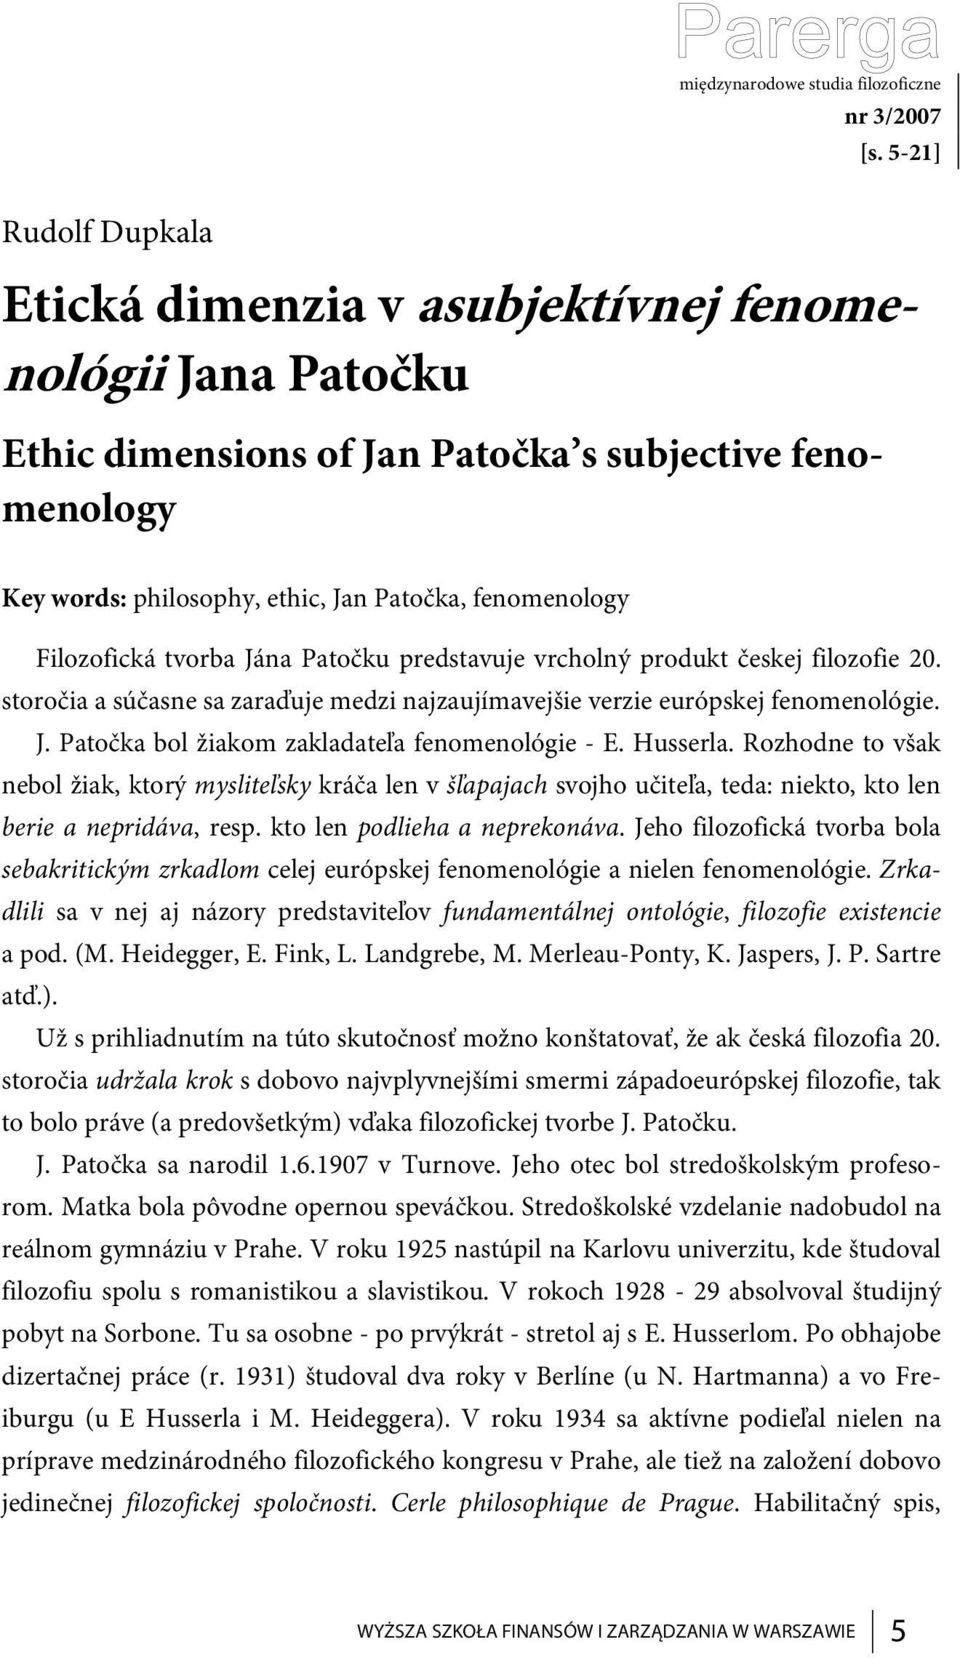 Filozofická tvorba Jána Patočku predstavuje vrcholný produkt českej filozofie 20. storočia a súčasne sa zaraďuje medzi najzaujímavejšie verzie európskej fenomenológie. J. Patočka bol žiakom zakladateľa fenomenológie - E.